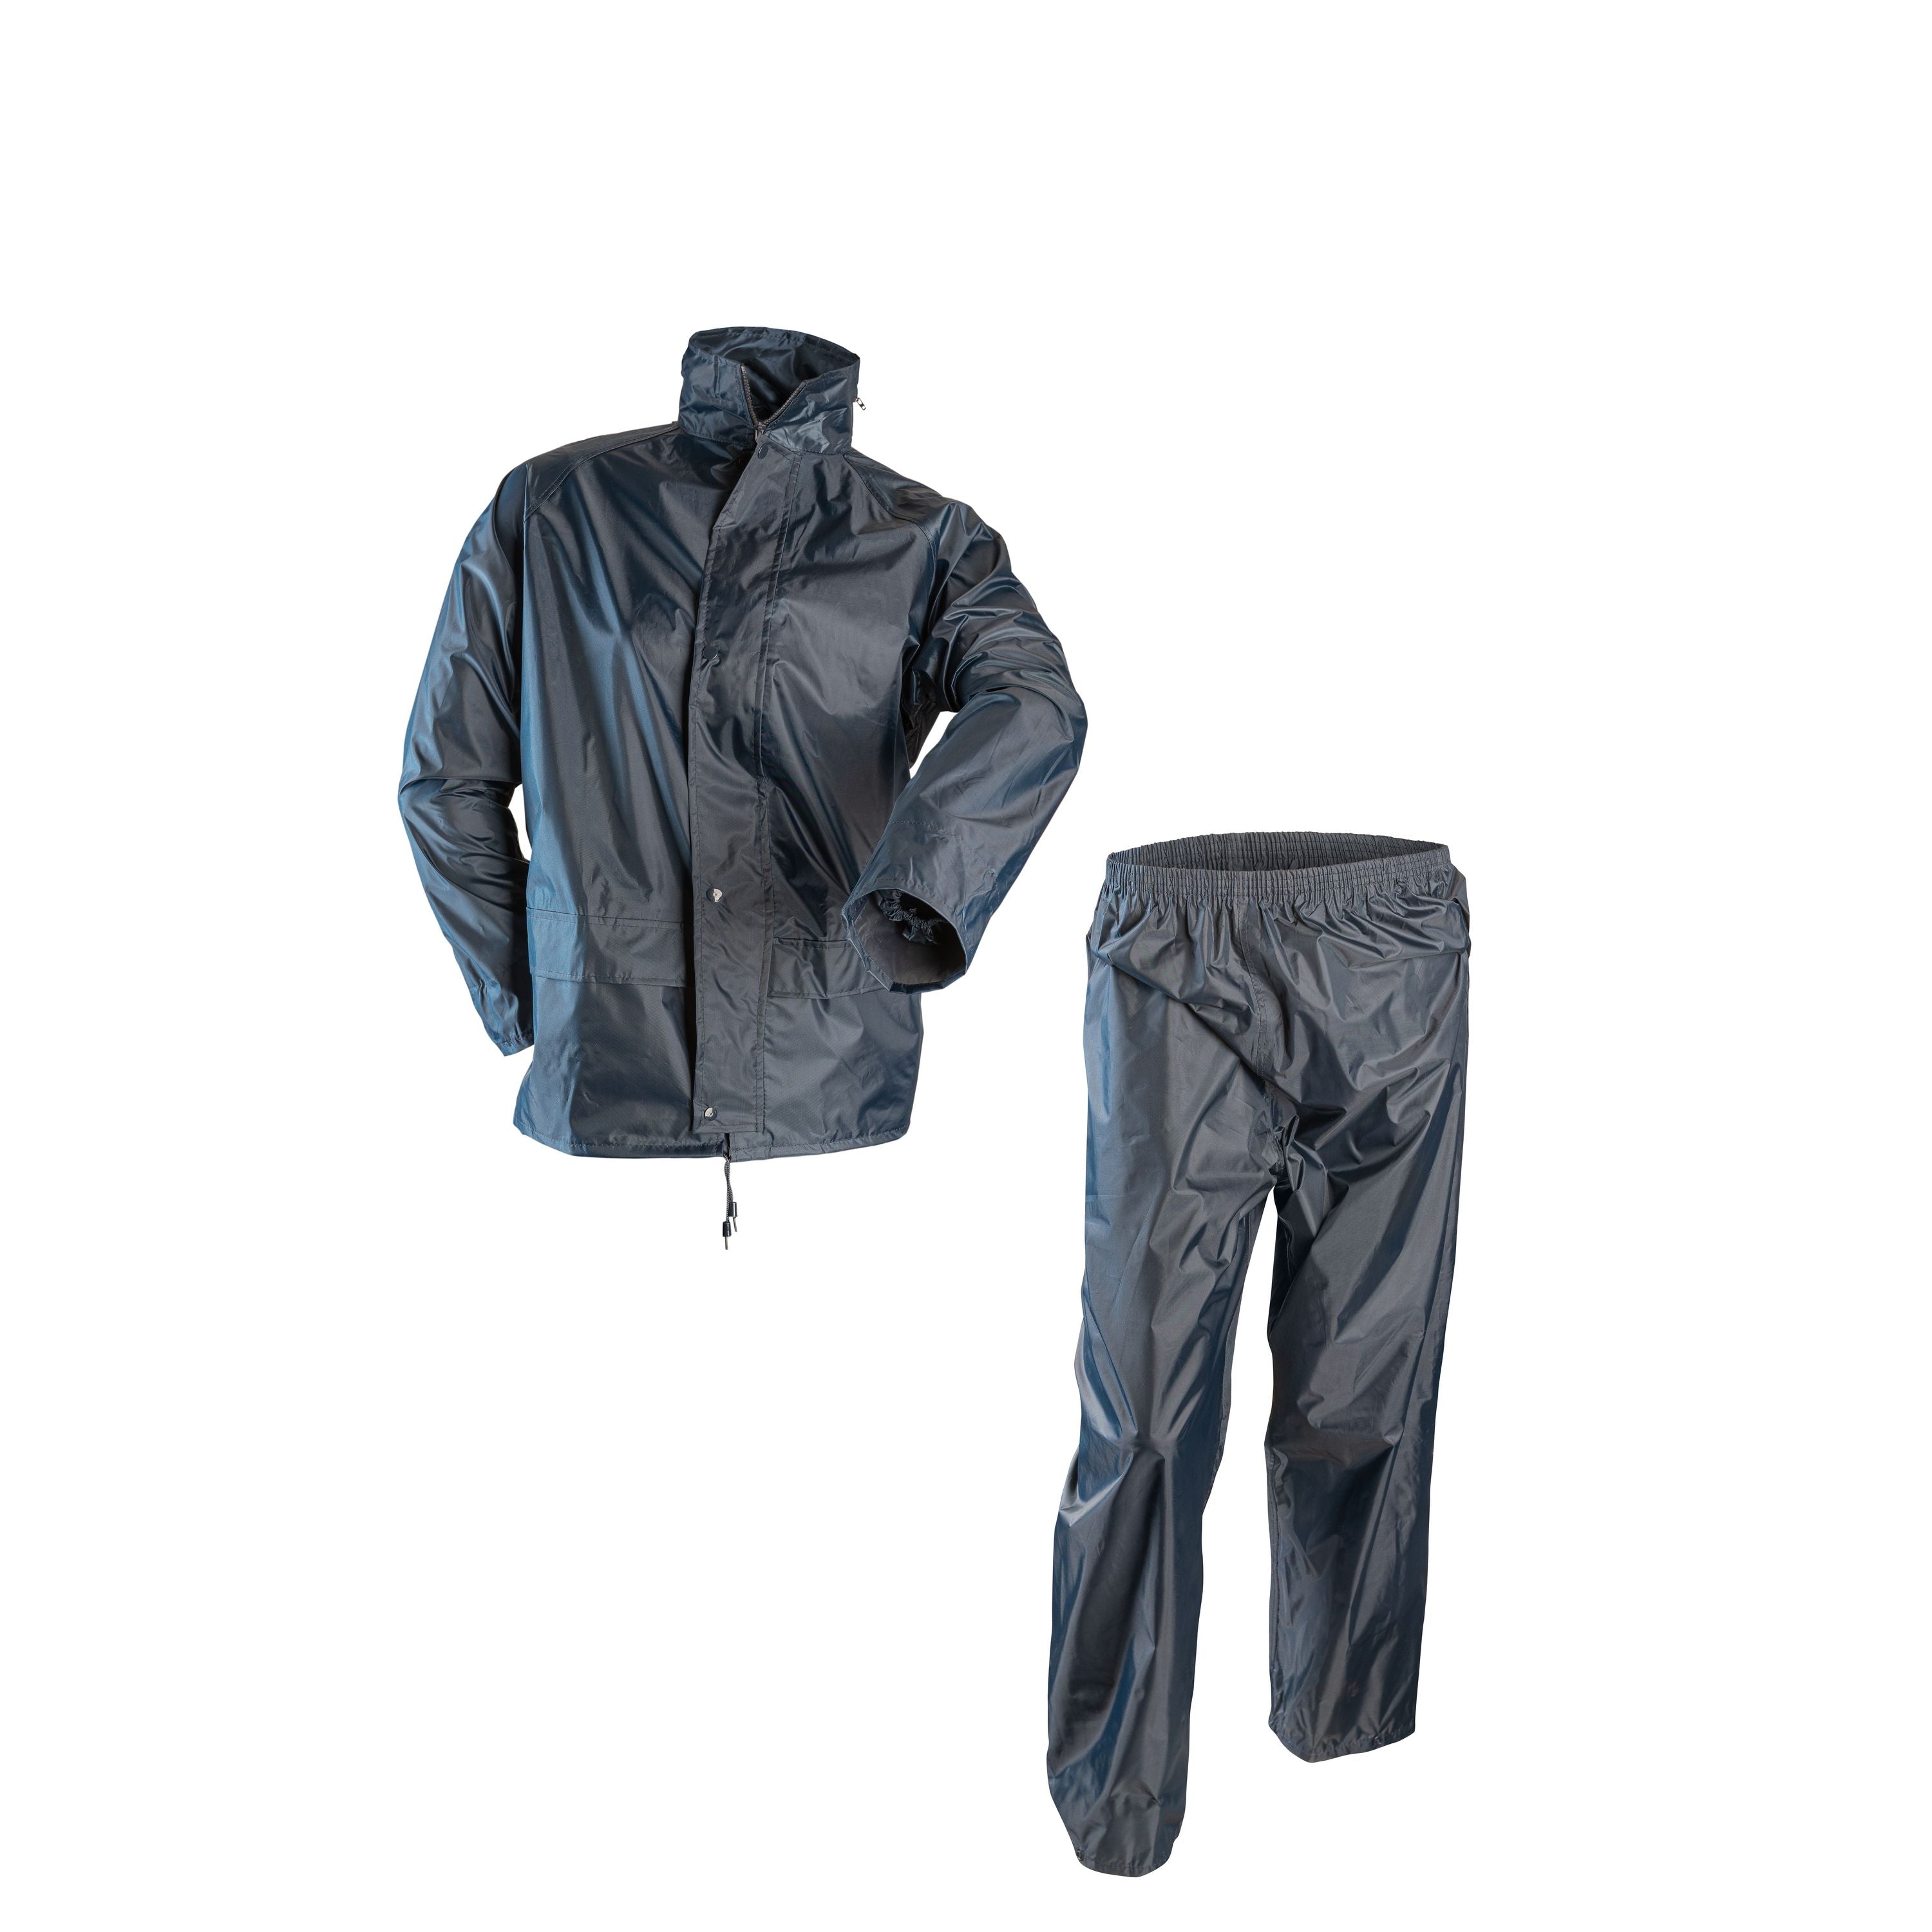 Ensemble imperméable en pvc - Homme||PVC rain suit - Men's